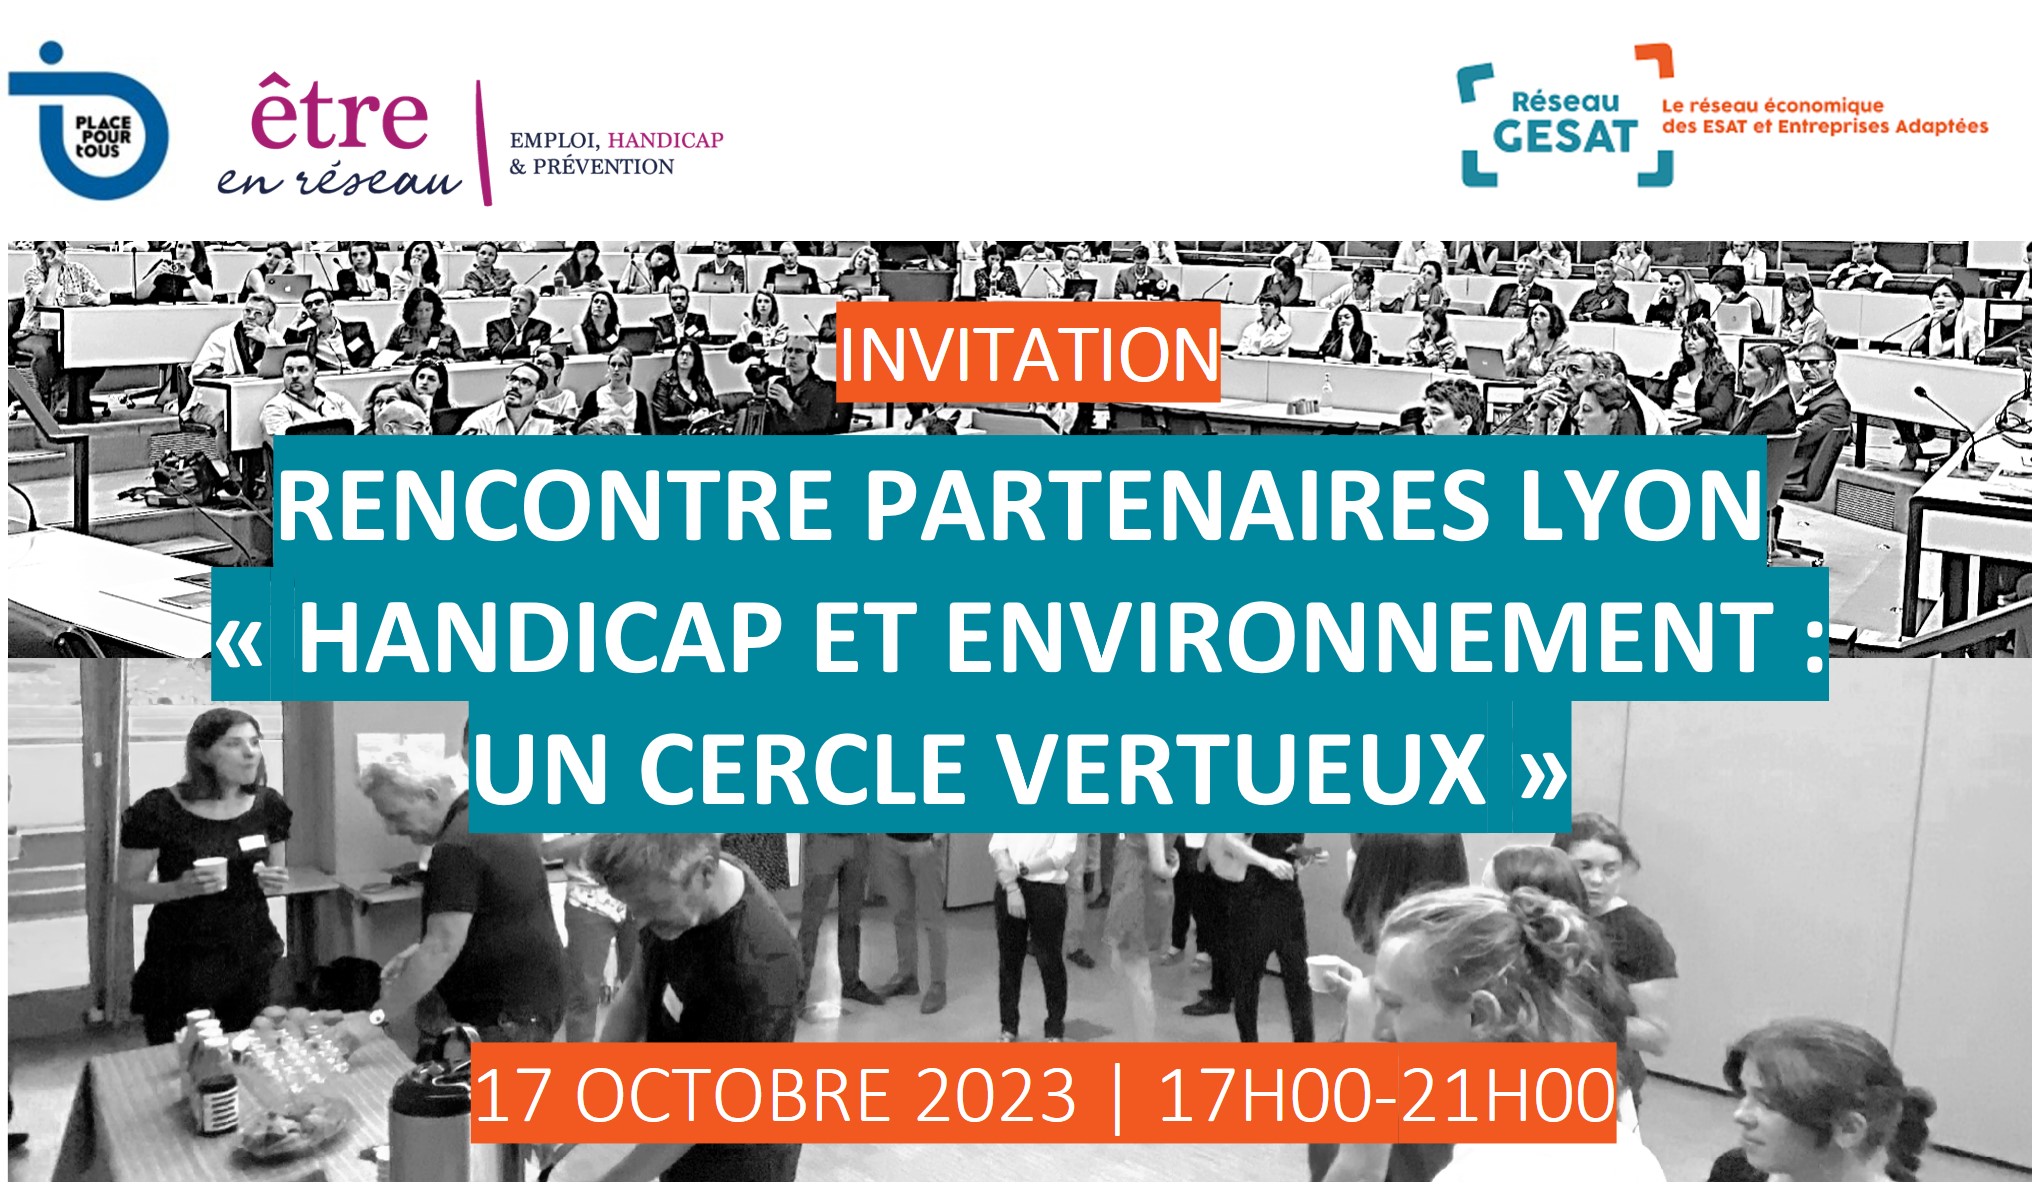 Invitation Rencontre Partenaires Lyon « HANDICAP et environnement : un cercle vertueux » - 17 octobre 2023 de 17h à 21h